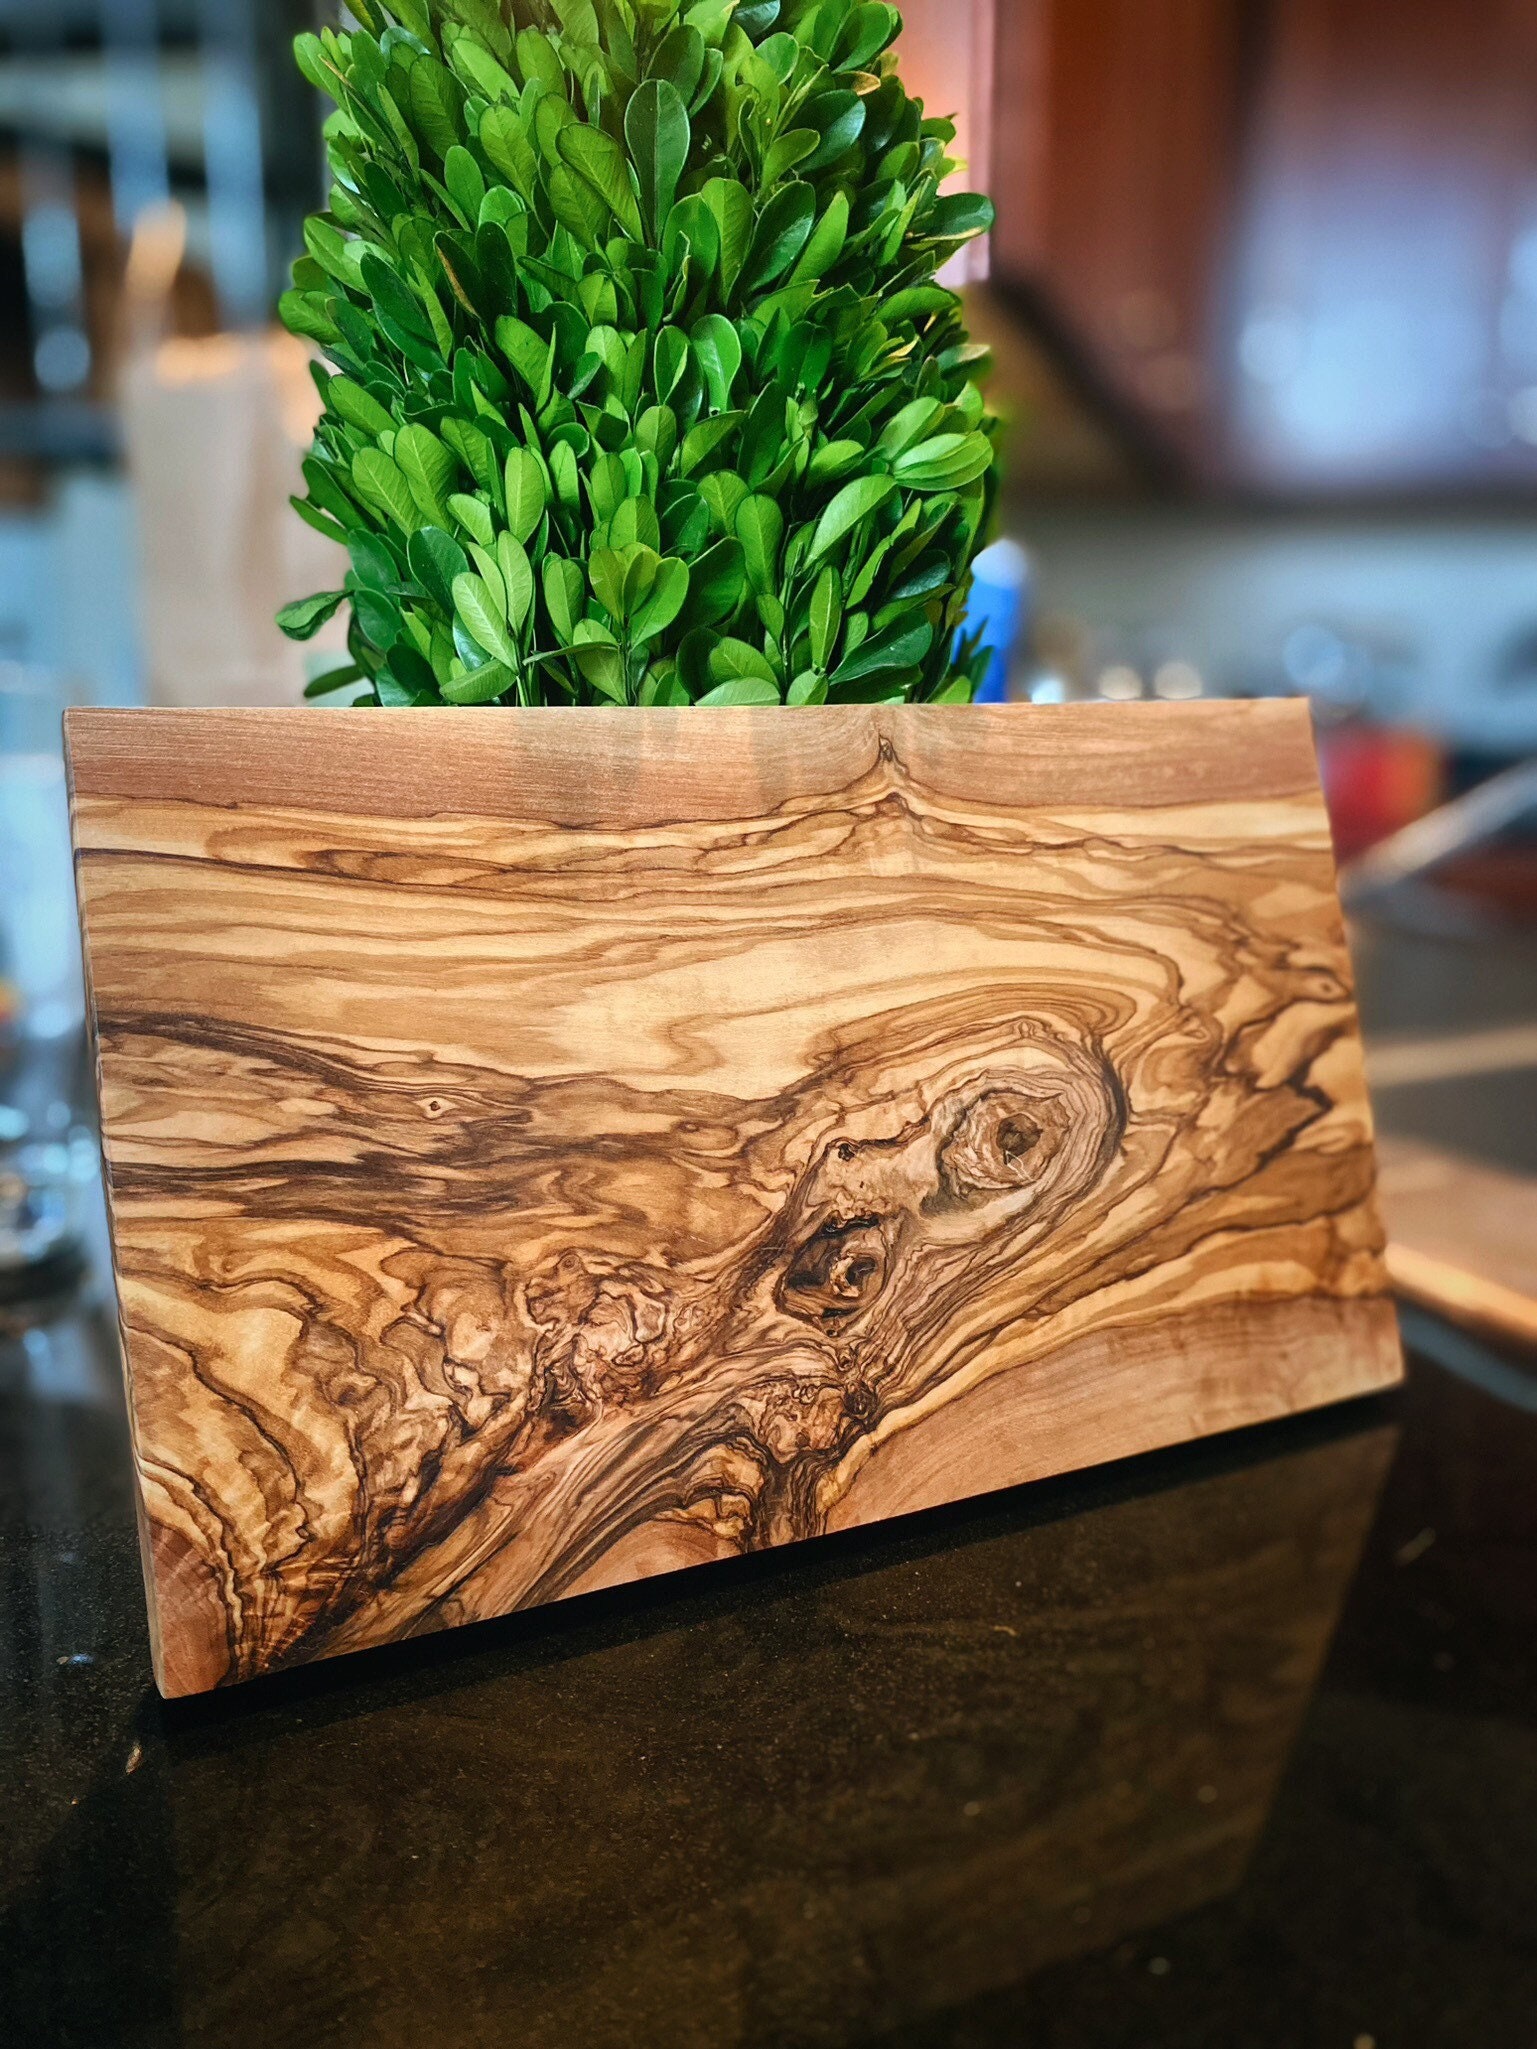 Olive Wood Paddle Board - Vesper and Vine